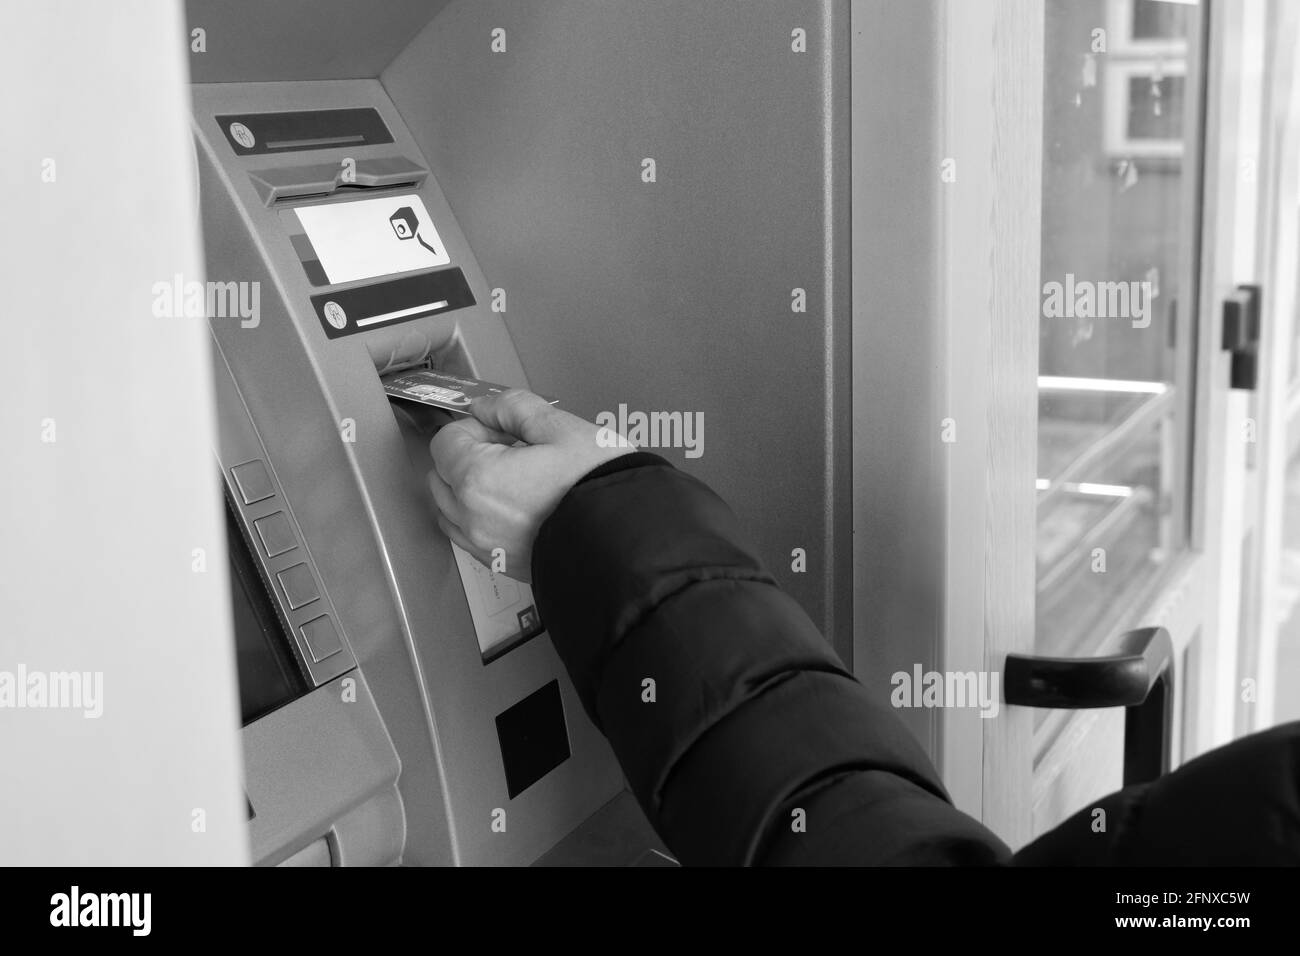 Eine Männerhand legt eine Kreditkarte in einen Geldautomaten ein. Schwarzweiß-Bild. Stockfoto